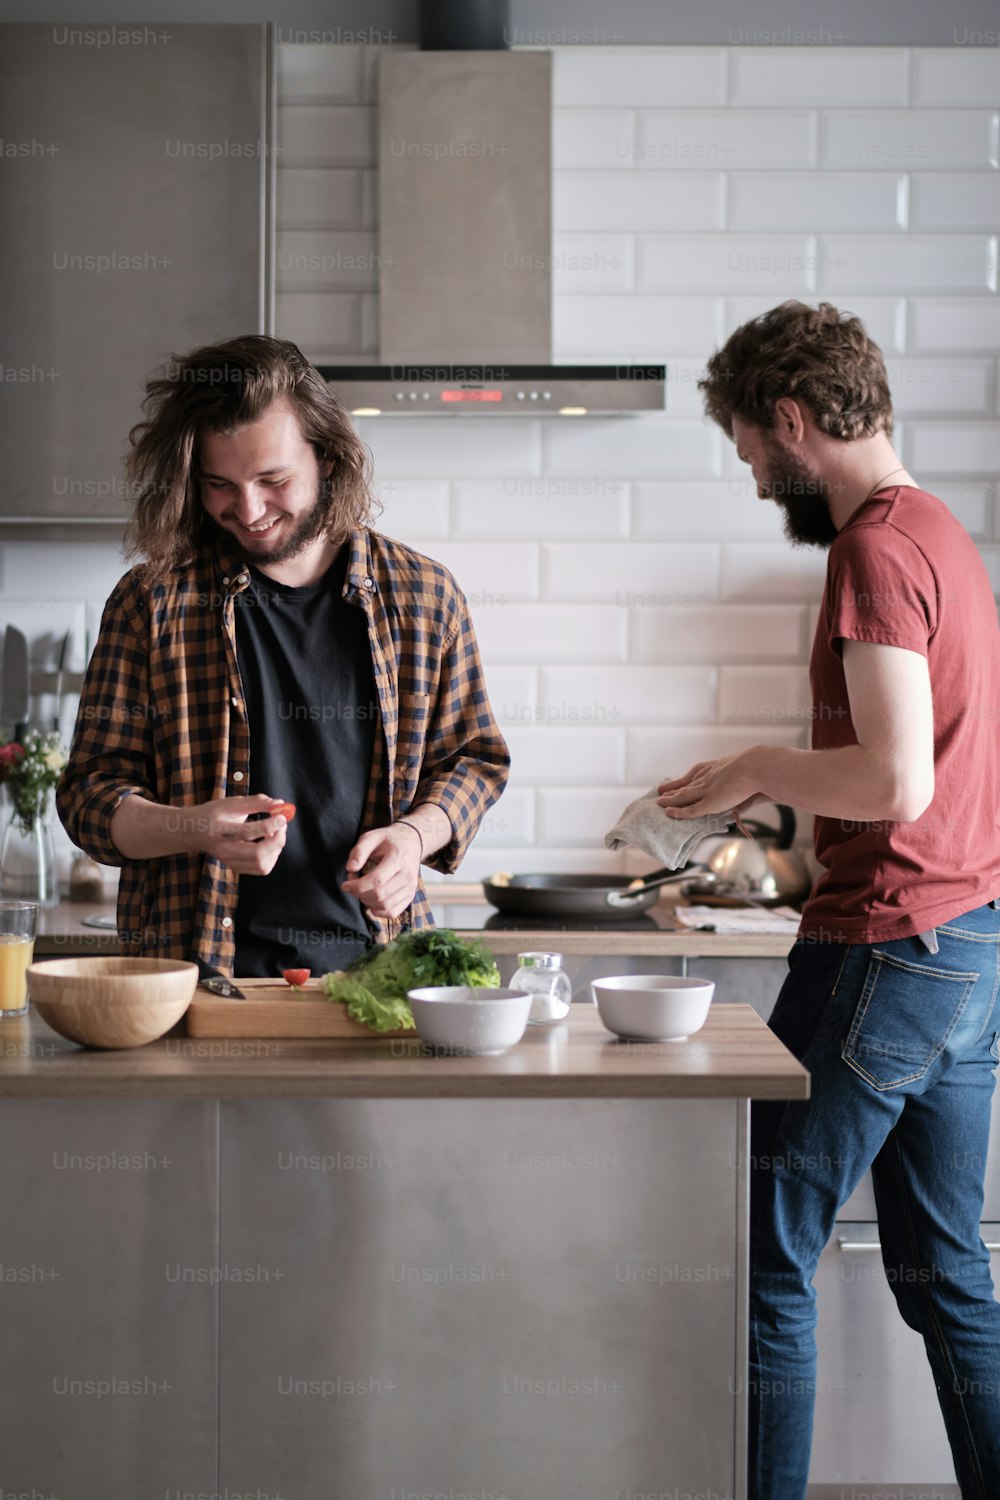 Portrait de deux hommes debout dans la cuisine, cuisinant, préparant de la salade. Un homme fait face à la caméra, un autre lui tourne le dos